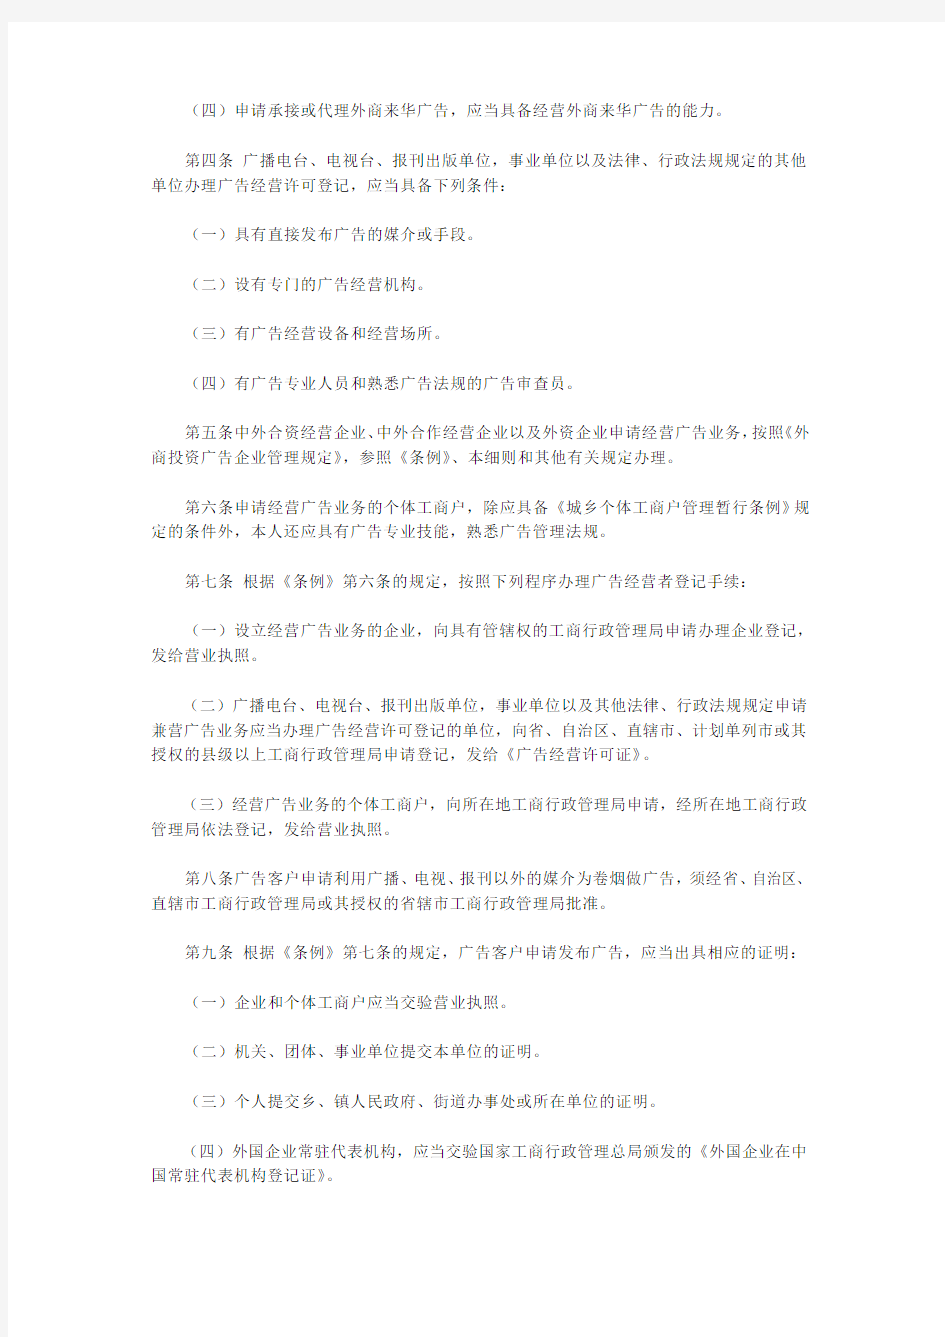 中华人民共和国广告法施行细则(工商总局令18号)